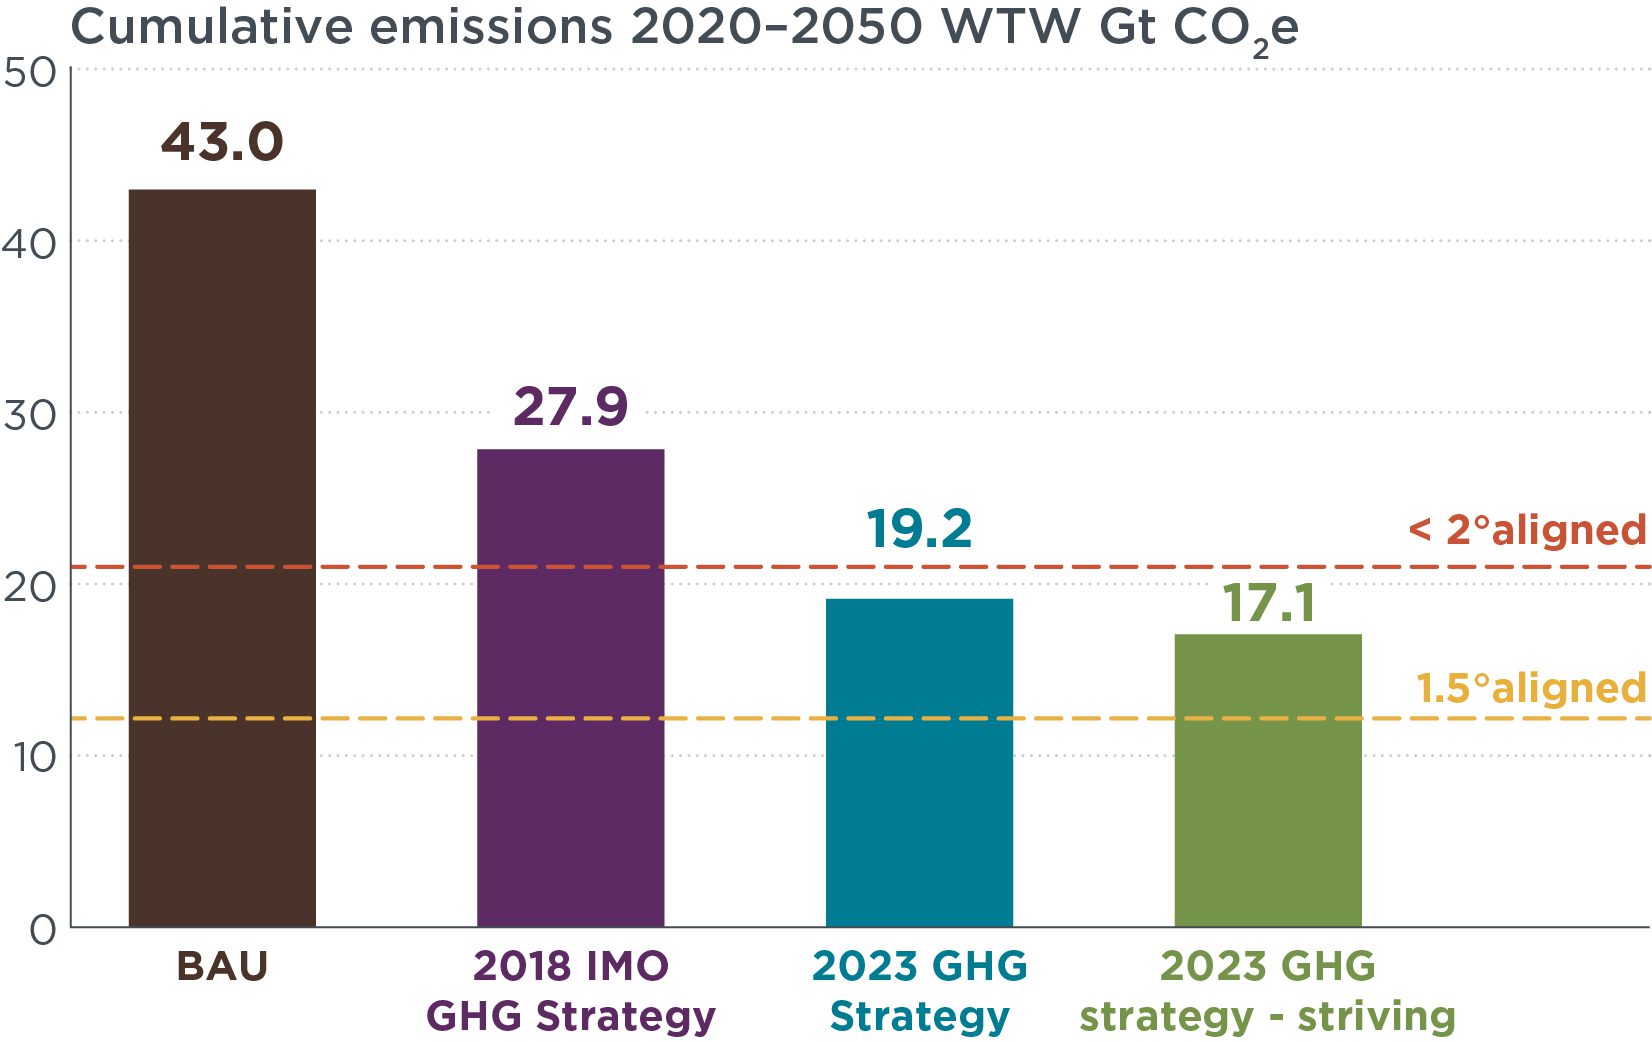 Bar chart shows BAU emissions at 43 Mt, 2018 Strategy at 27.9 Mt, 2023 Strategy at 19.2 Mt, and the 2023 Striving Strategy at 17.1 Mt.